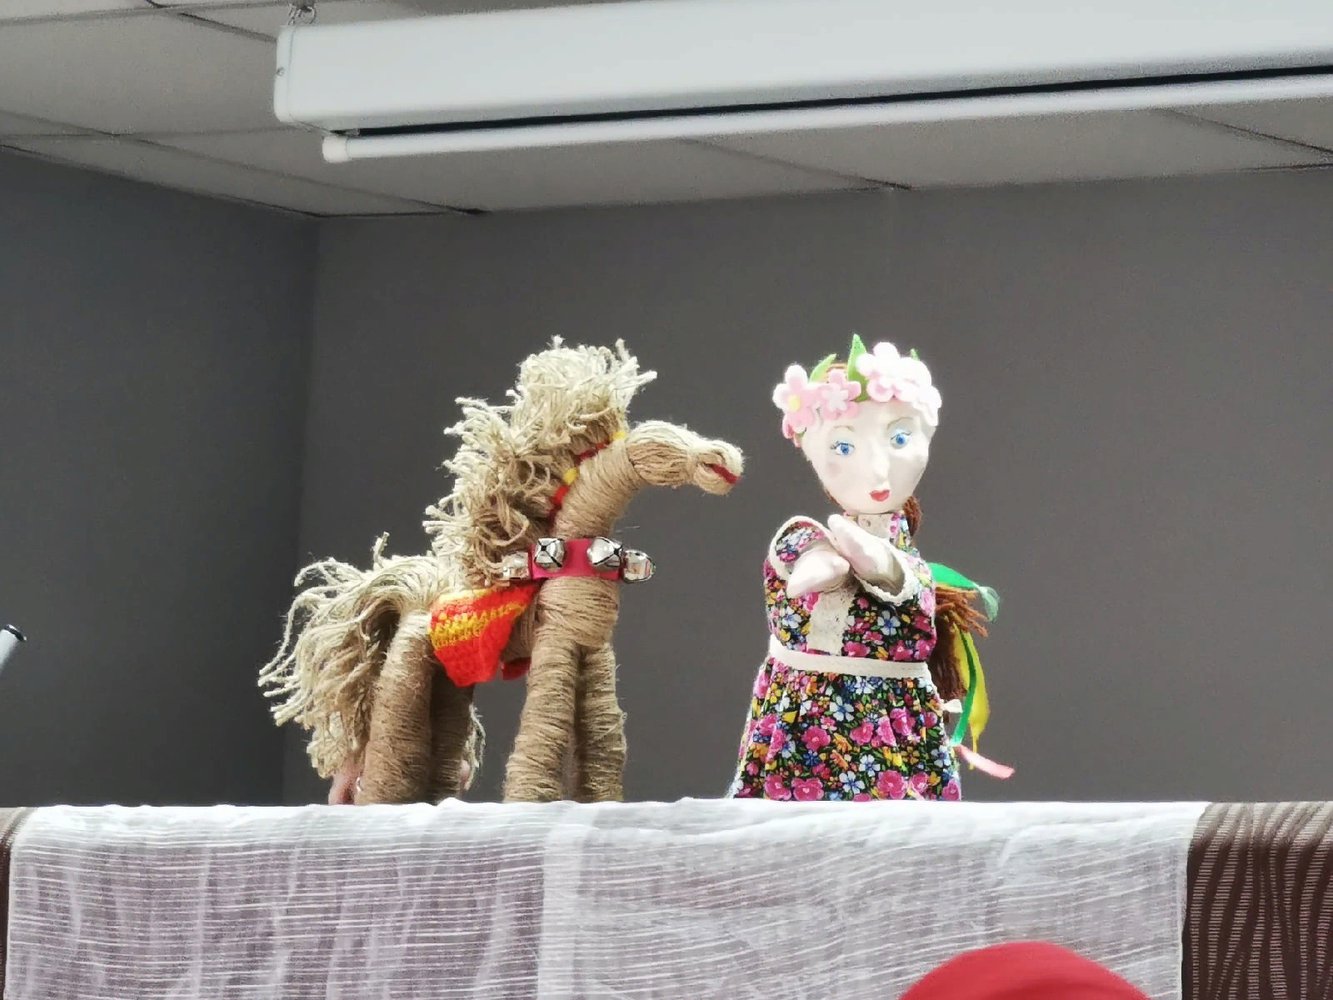 21 апреля рамках XII Пасхального фестиваля приглашаем молодые семьи с детьми посетить на кукольный спектакль «Поклонилась Весна Кузнецу».